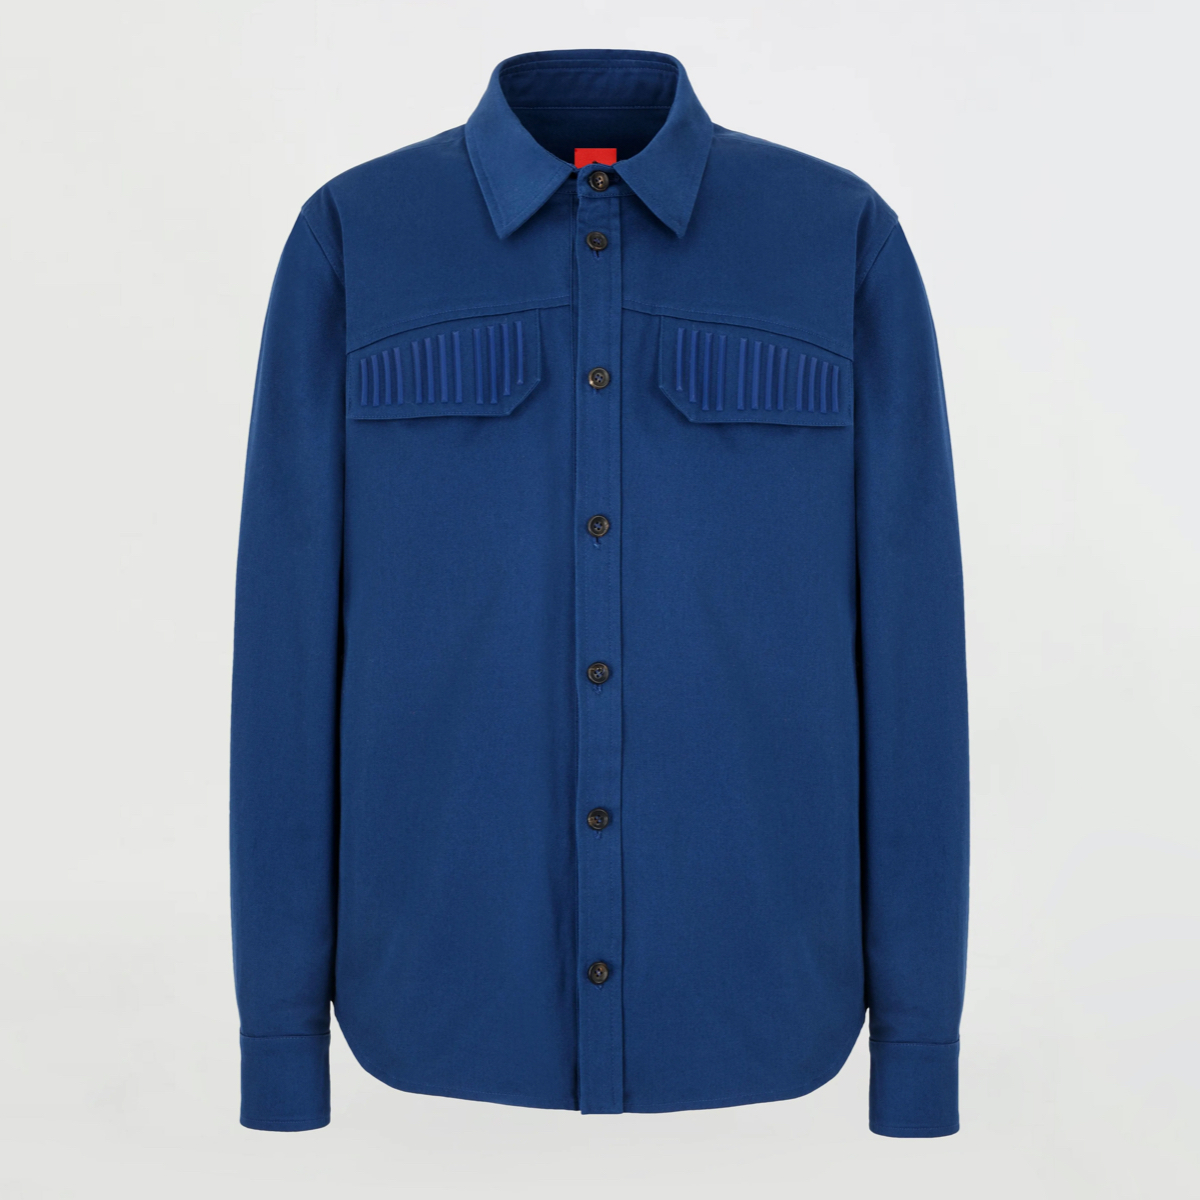 Men's light blue organic cotton shirt